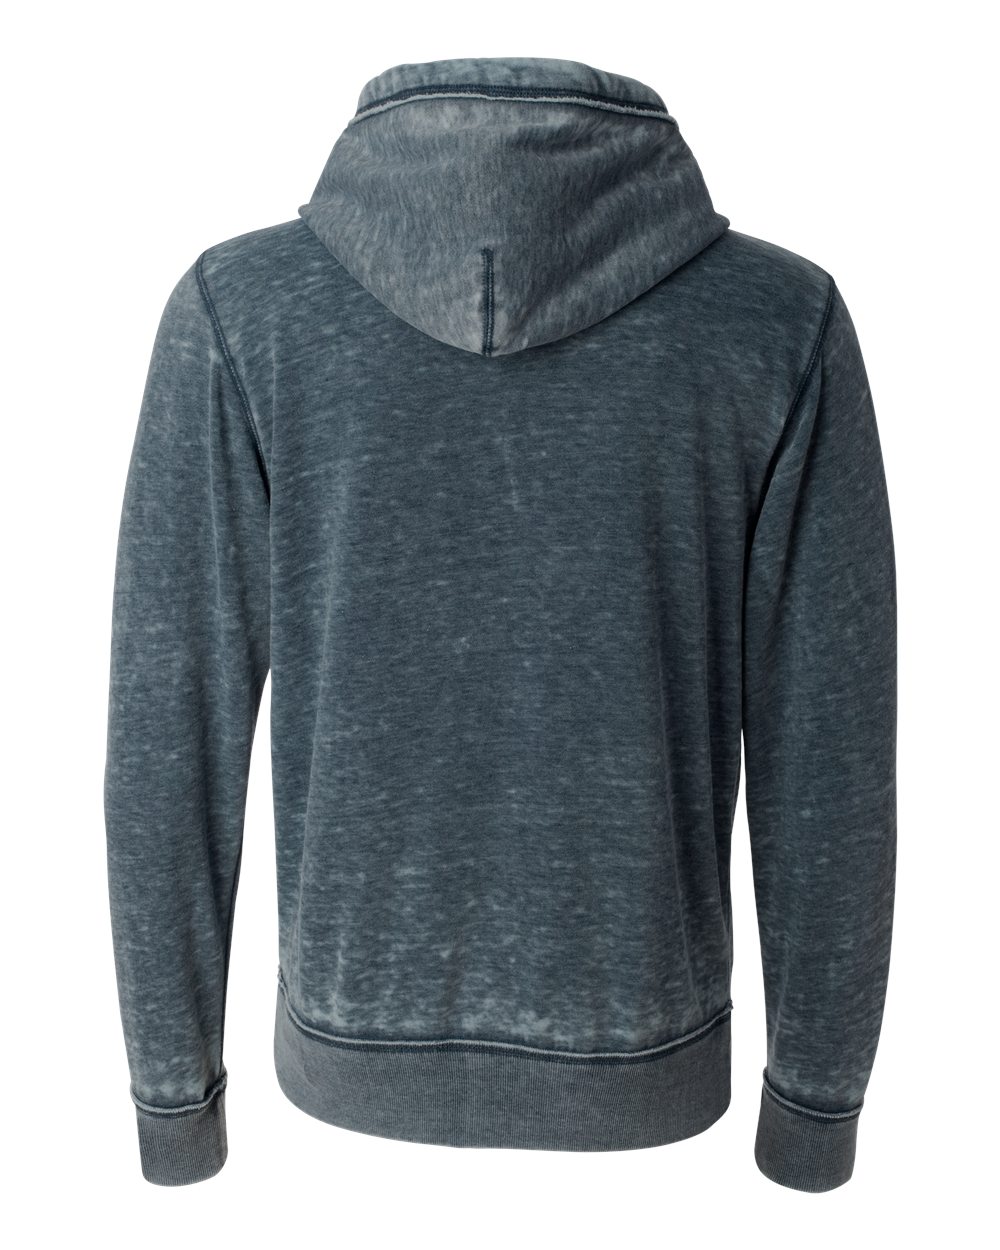 J. America Mens Vintage Zen Fleece Full-Zip Hooded Sweatshirt 8916 up ...